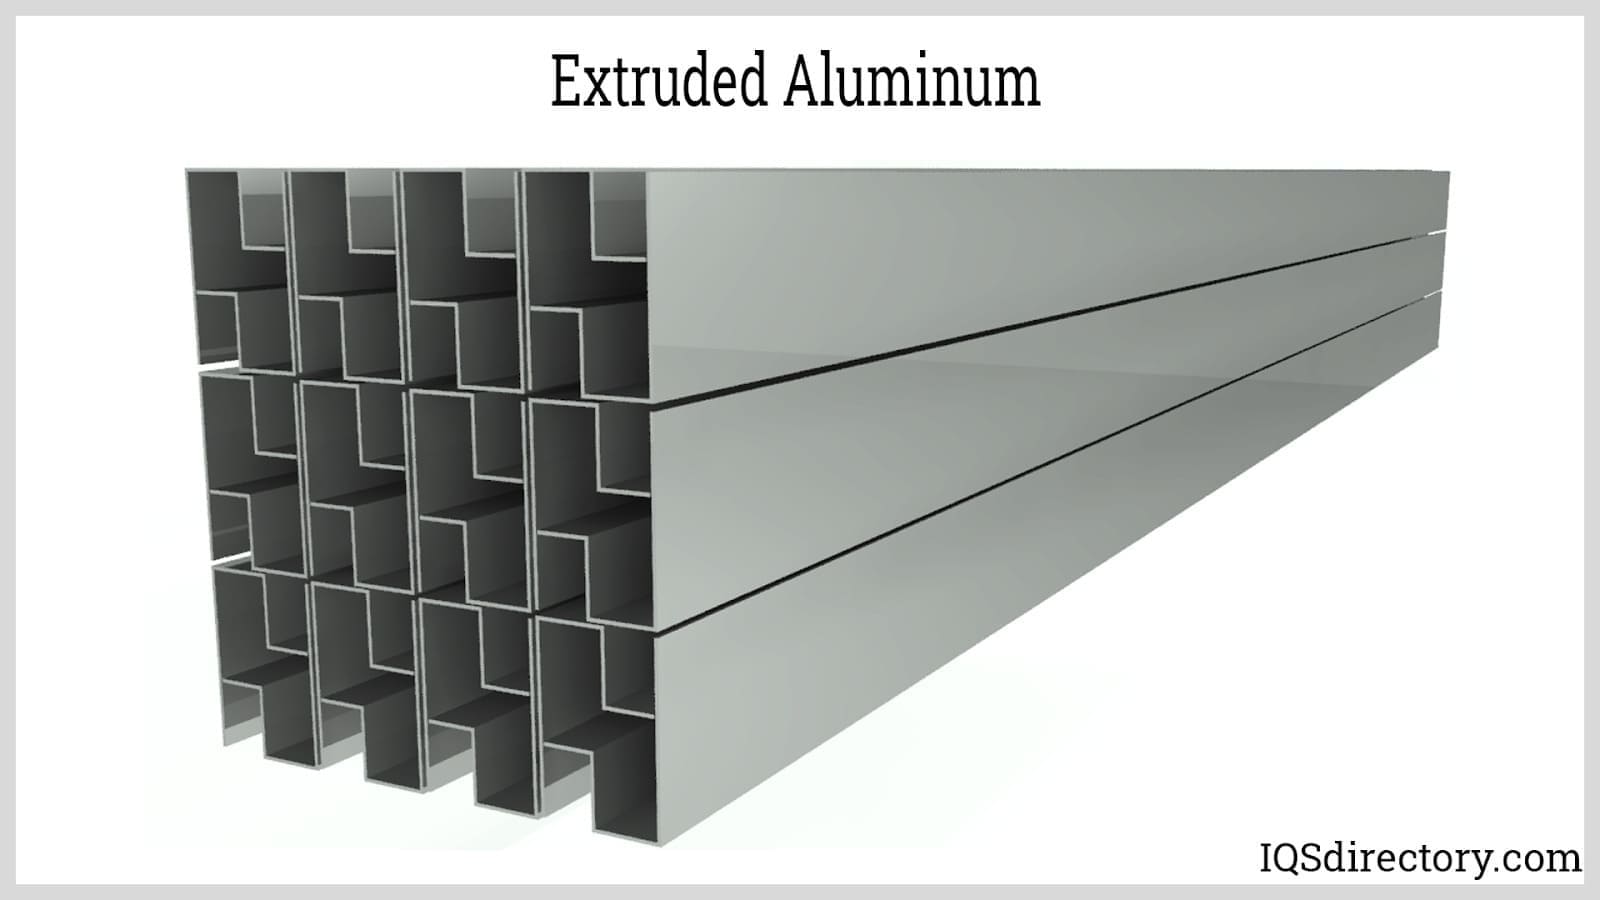 High precision aluminum profile extrusion, even small dimensions